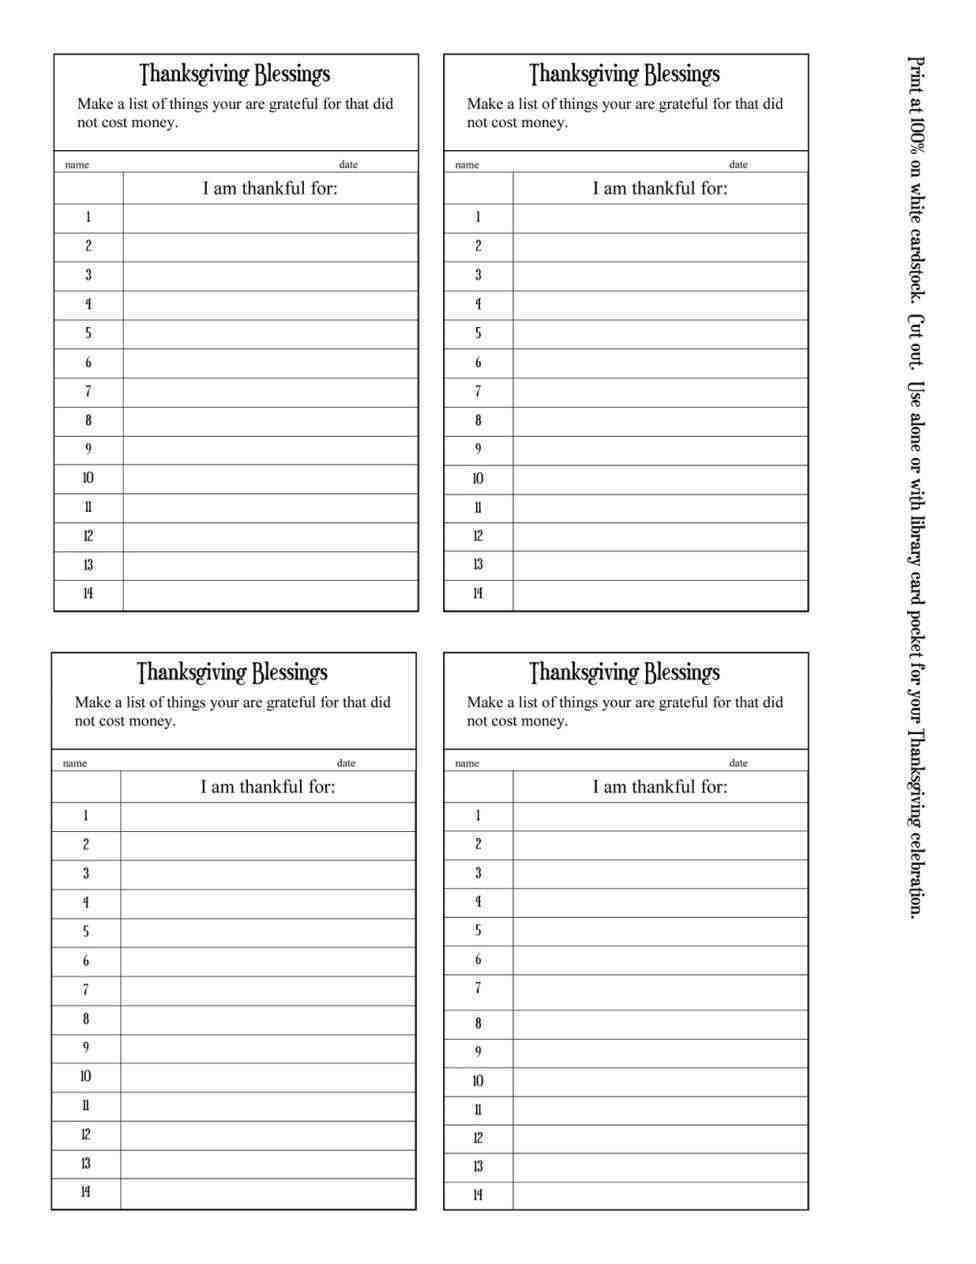 Baseball Lineup Cards Printable | Template Business Psd Regarding Baseball Lineup Card Template